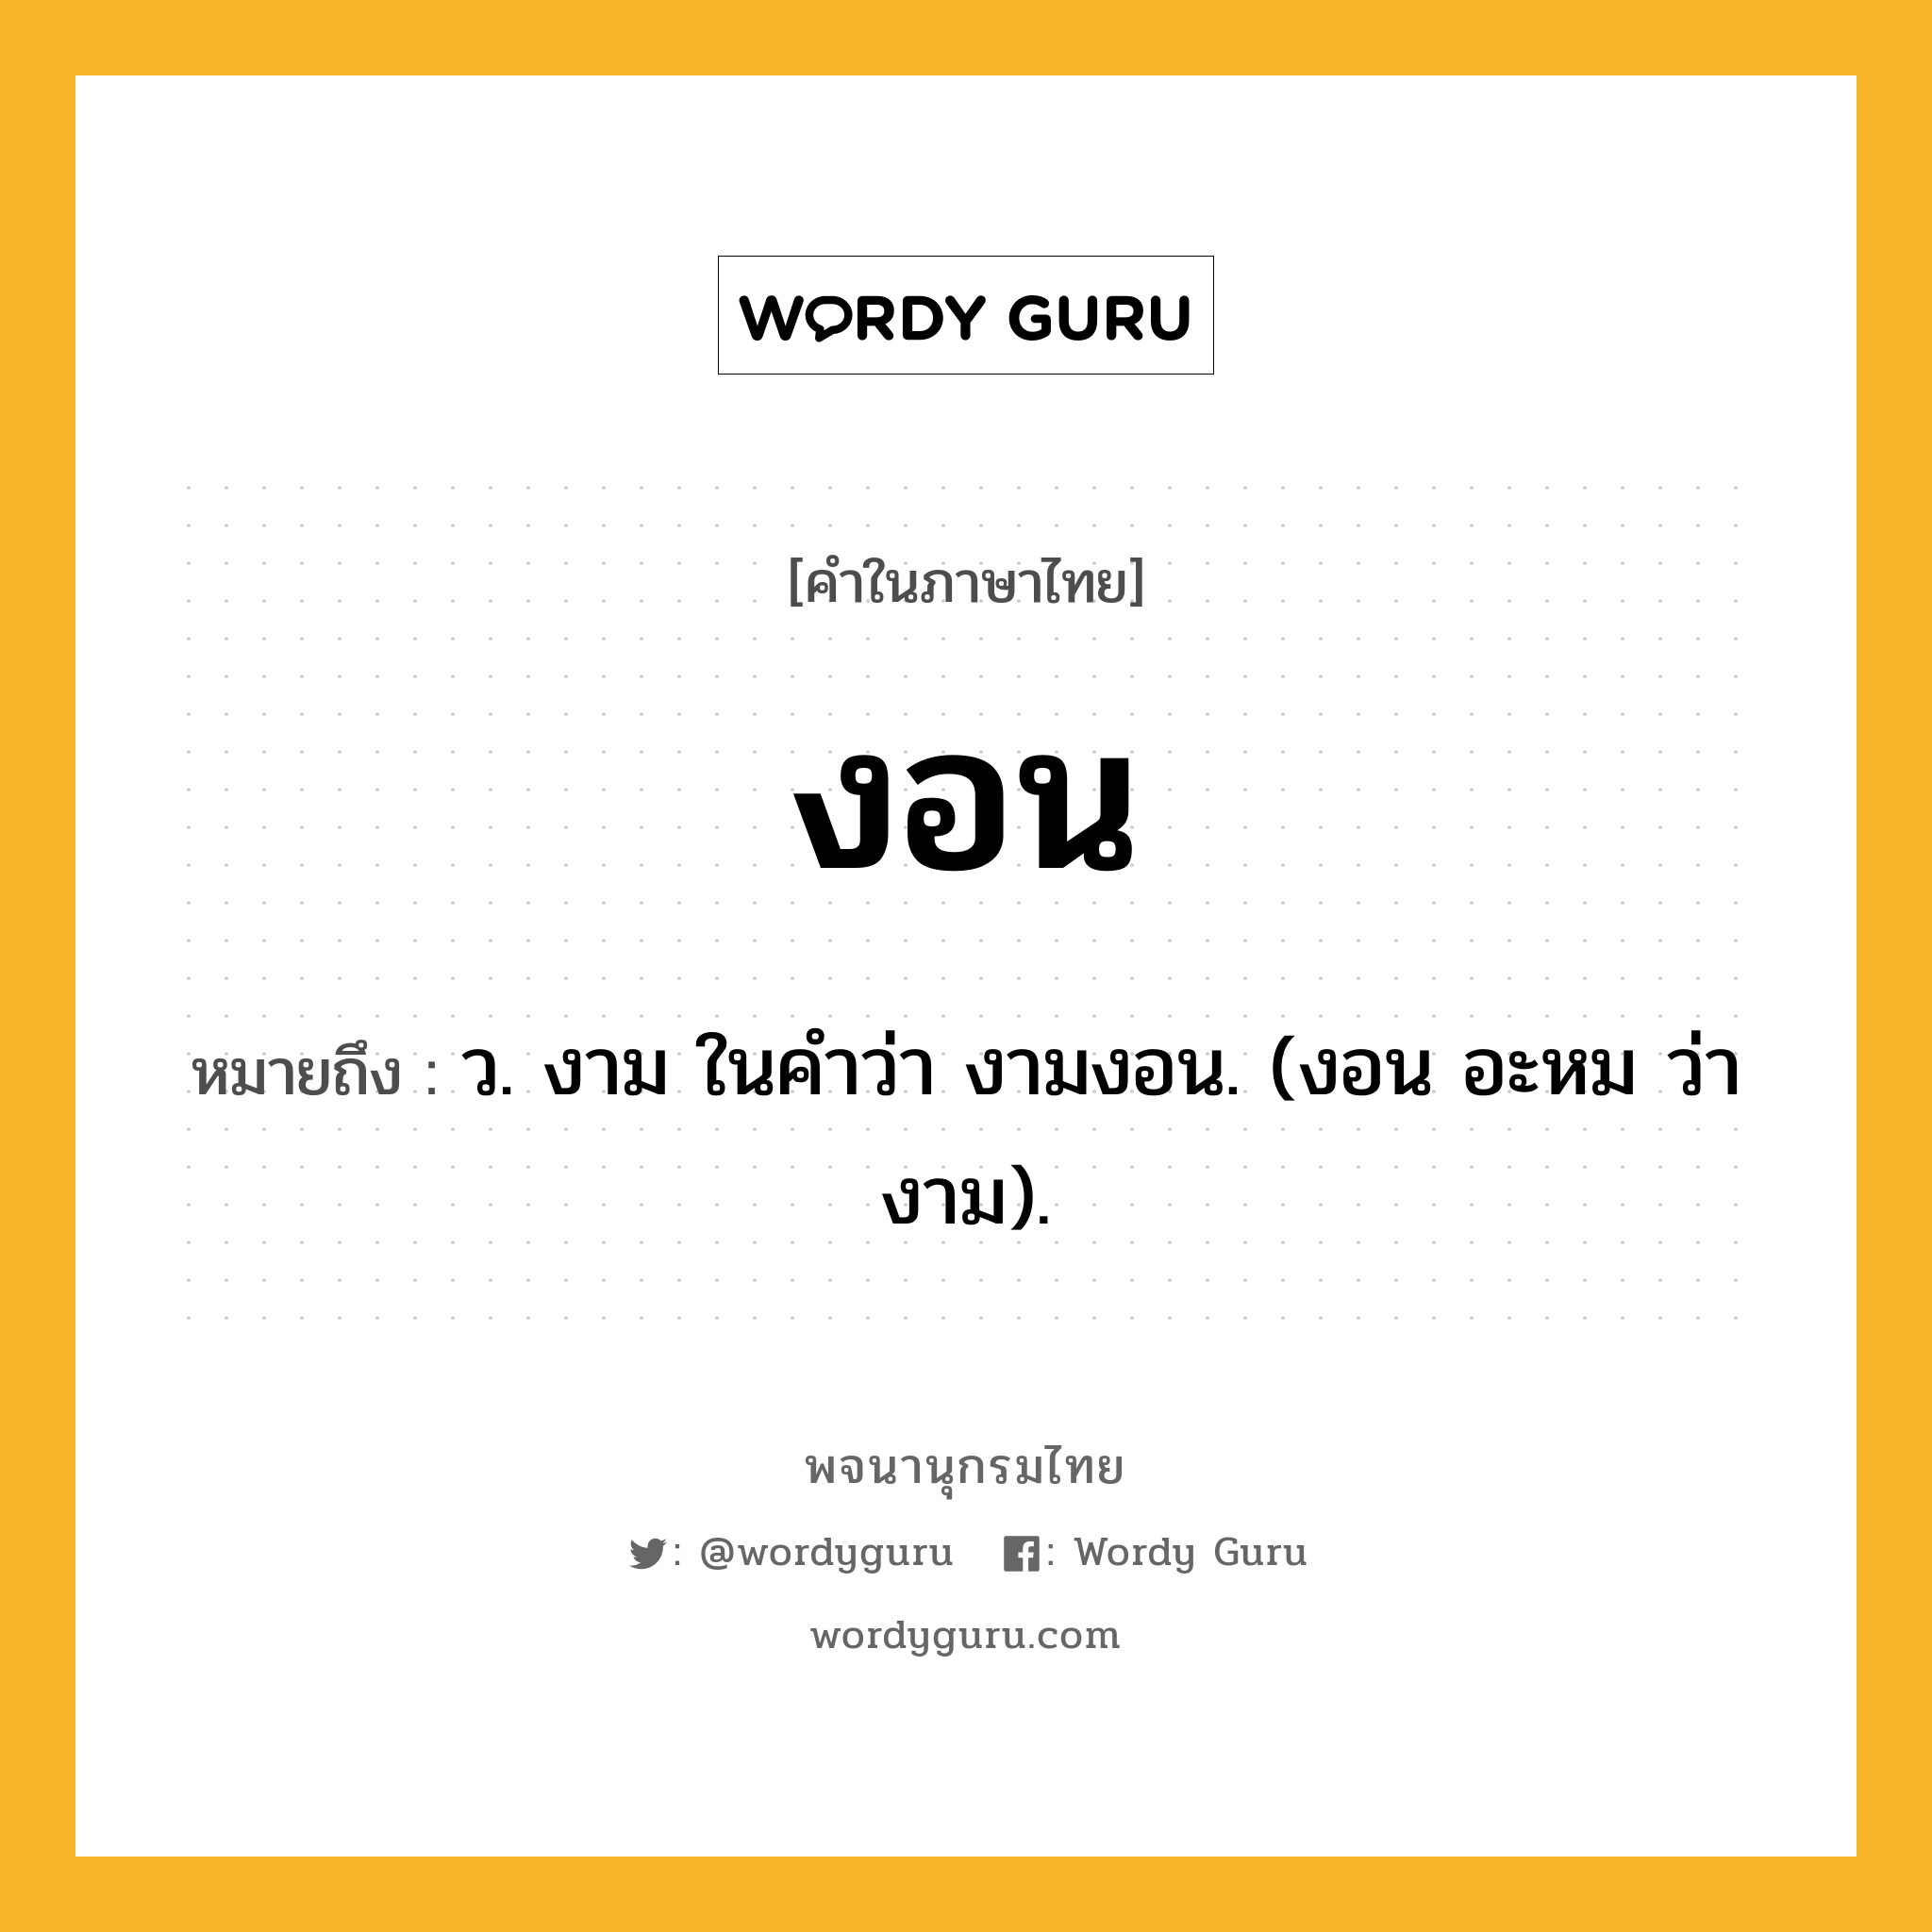 งอน ความหมาย หมายถึงอะไร?, คำในภาษาไทย งอน หมายถึง ว. งาม ในคำว่า งามงอน. (งอน อะหม ว่า งาม).